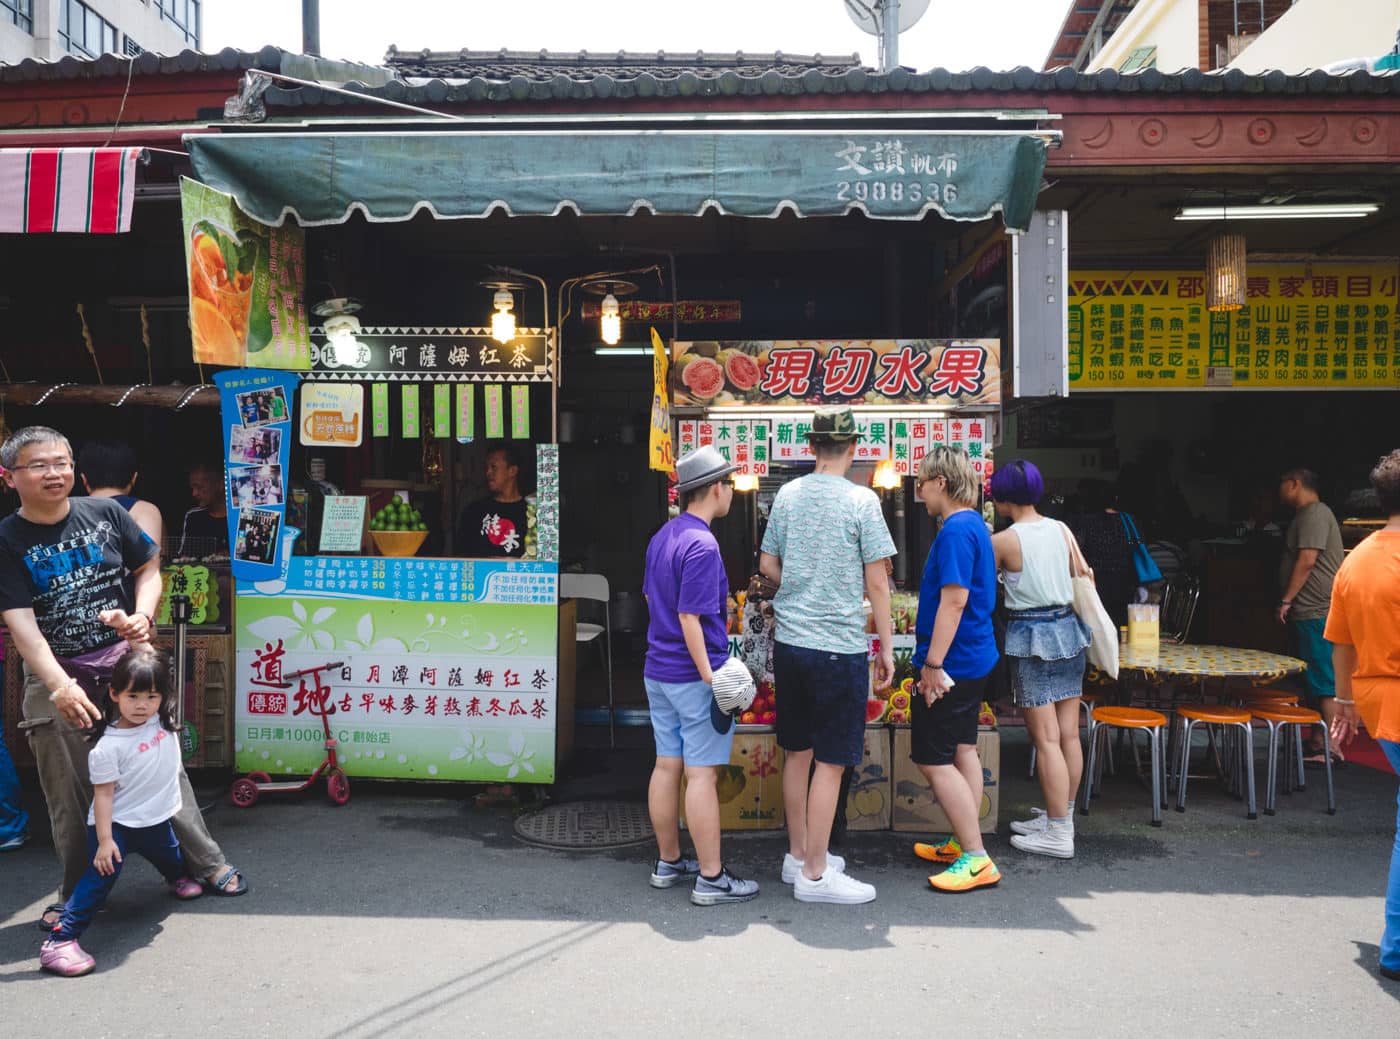 Taiwan - Nantou City - Buying fruits